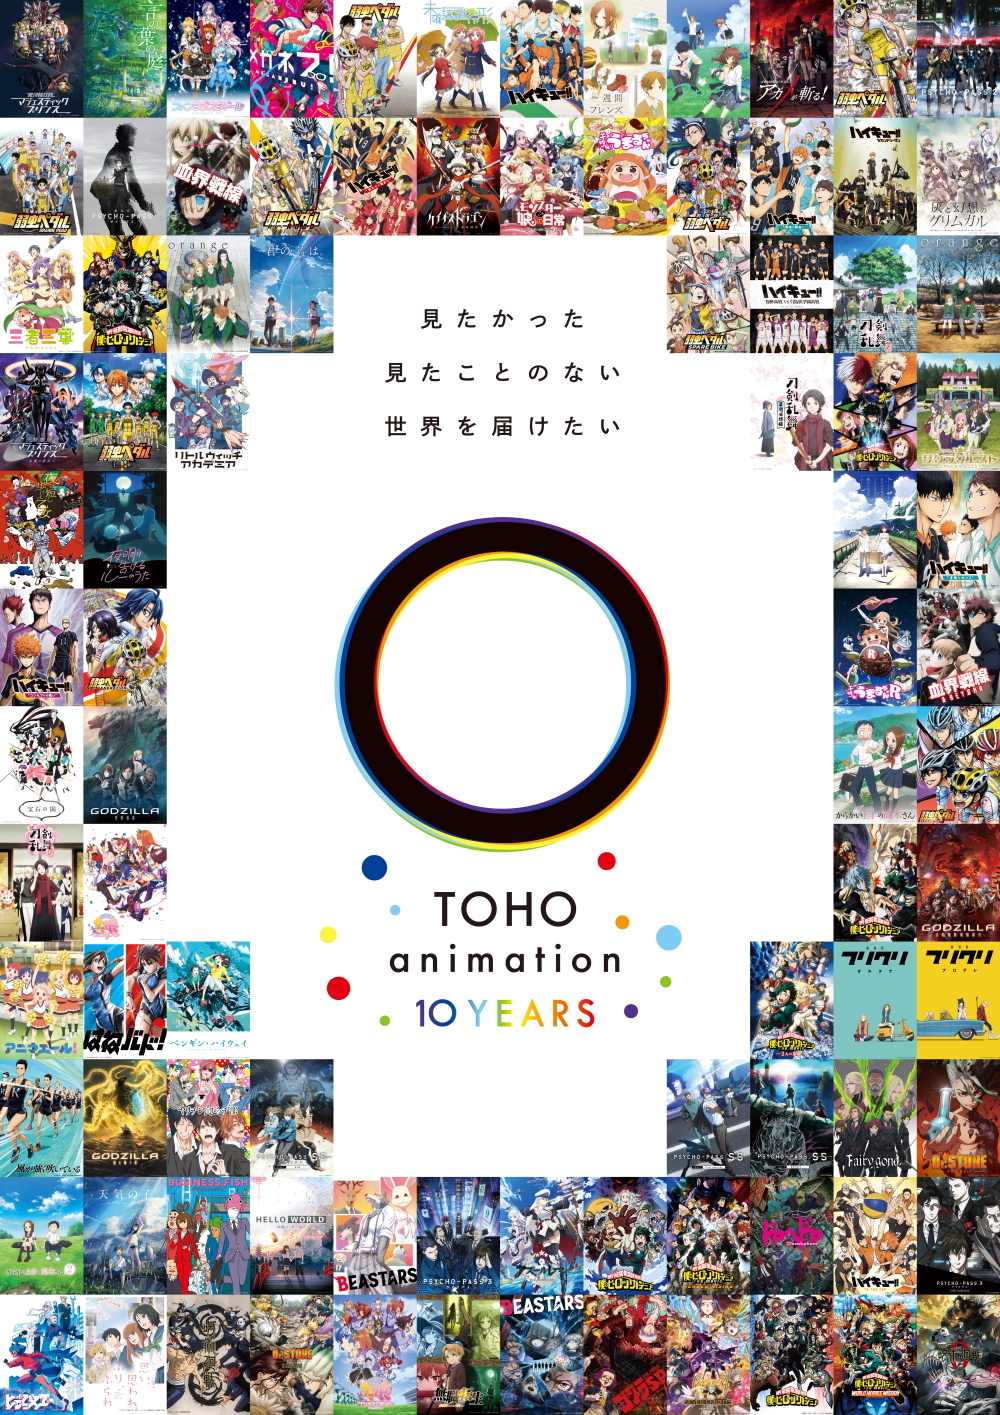 ハイキュー!!」や「刀剣乱舞-花丸-」を手掛けるTOHO animationの10周年